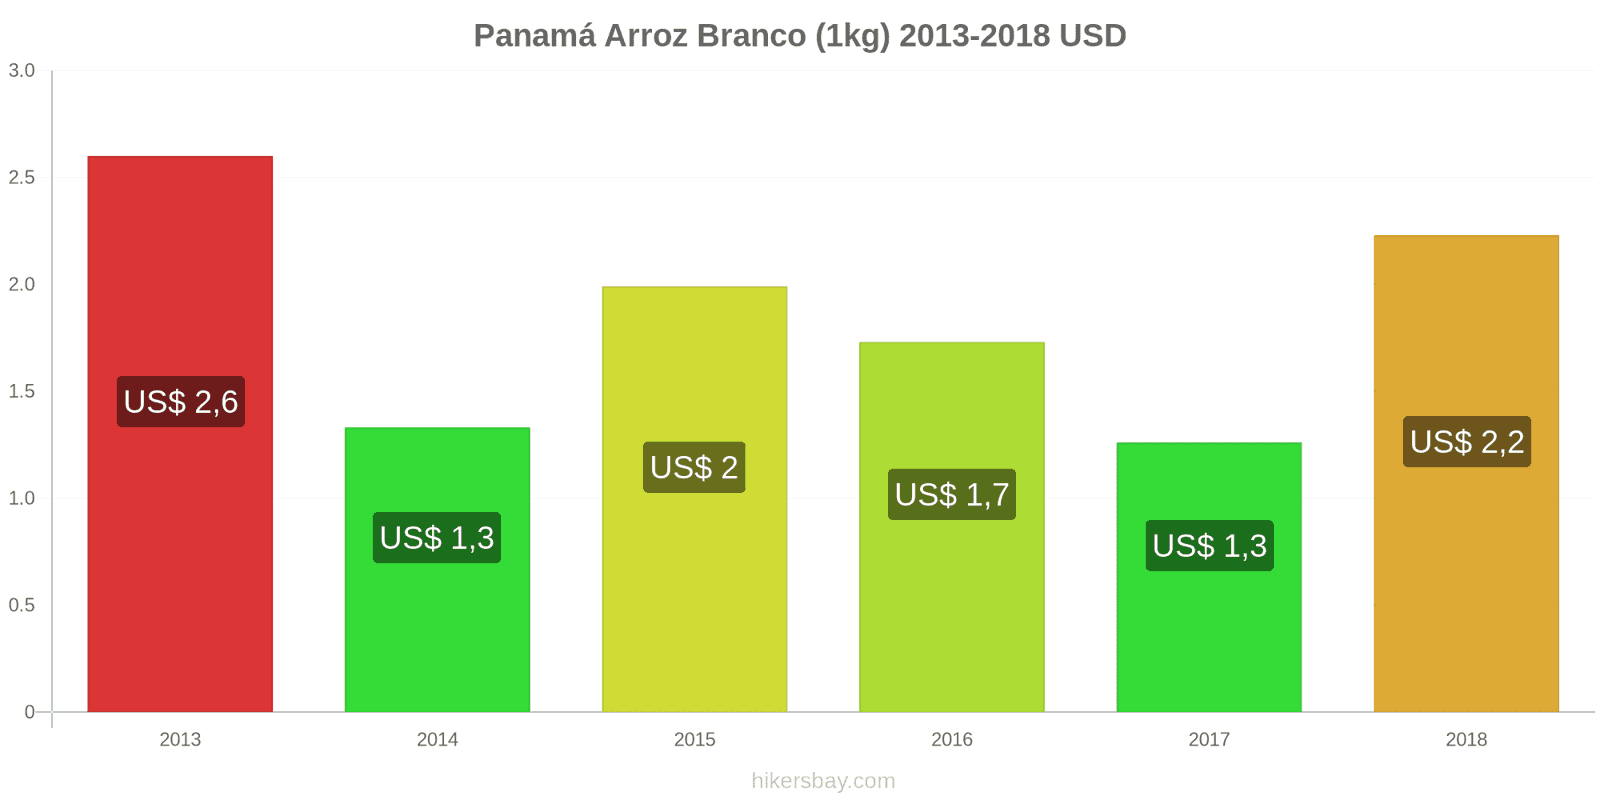 Panamá mudanças de preços Quilo de arroz branco hikersbay.com